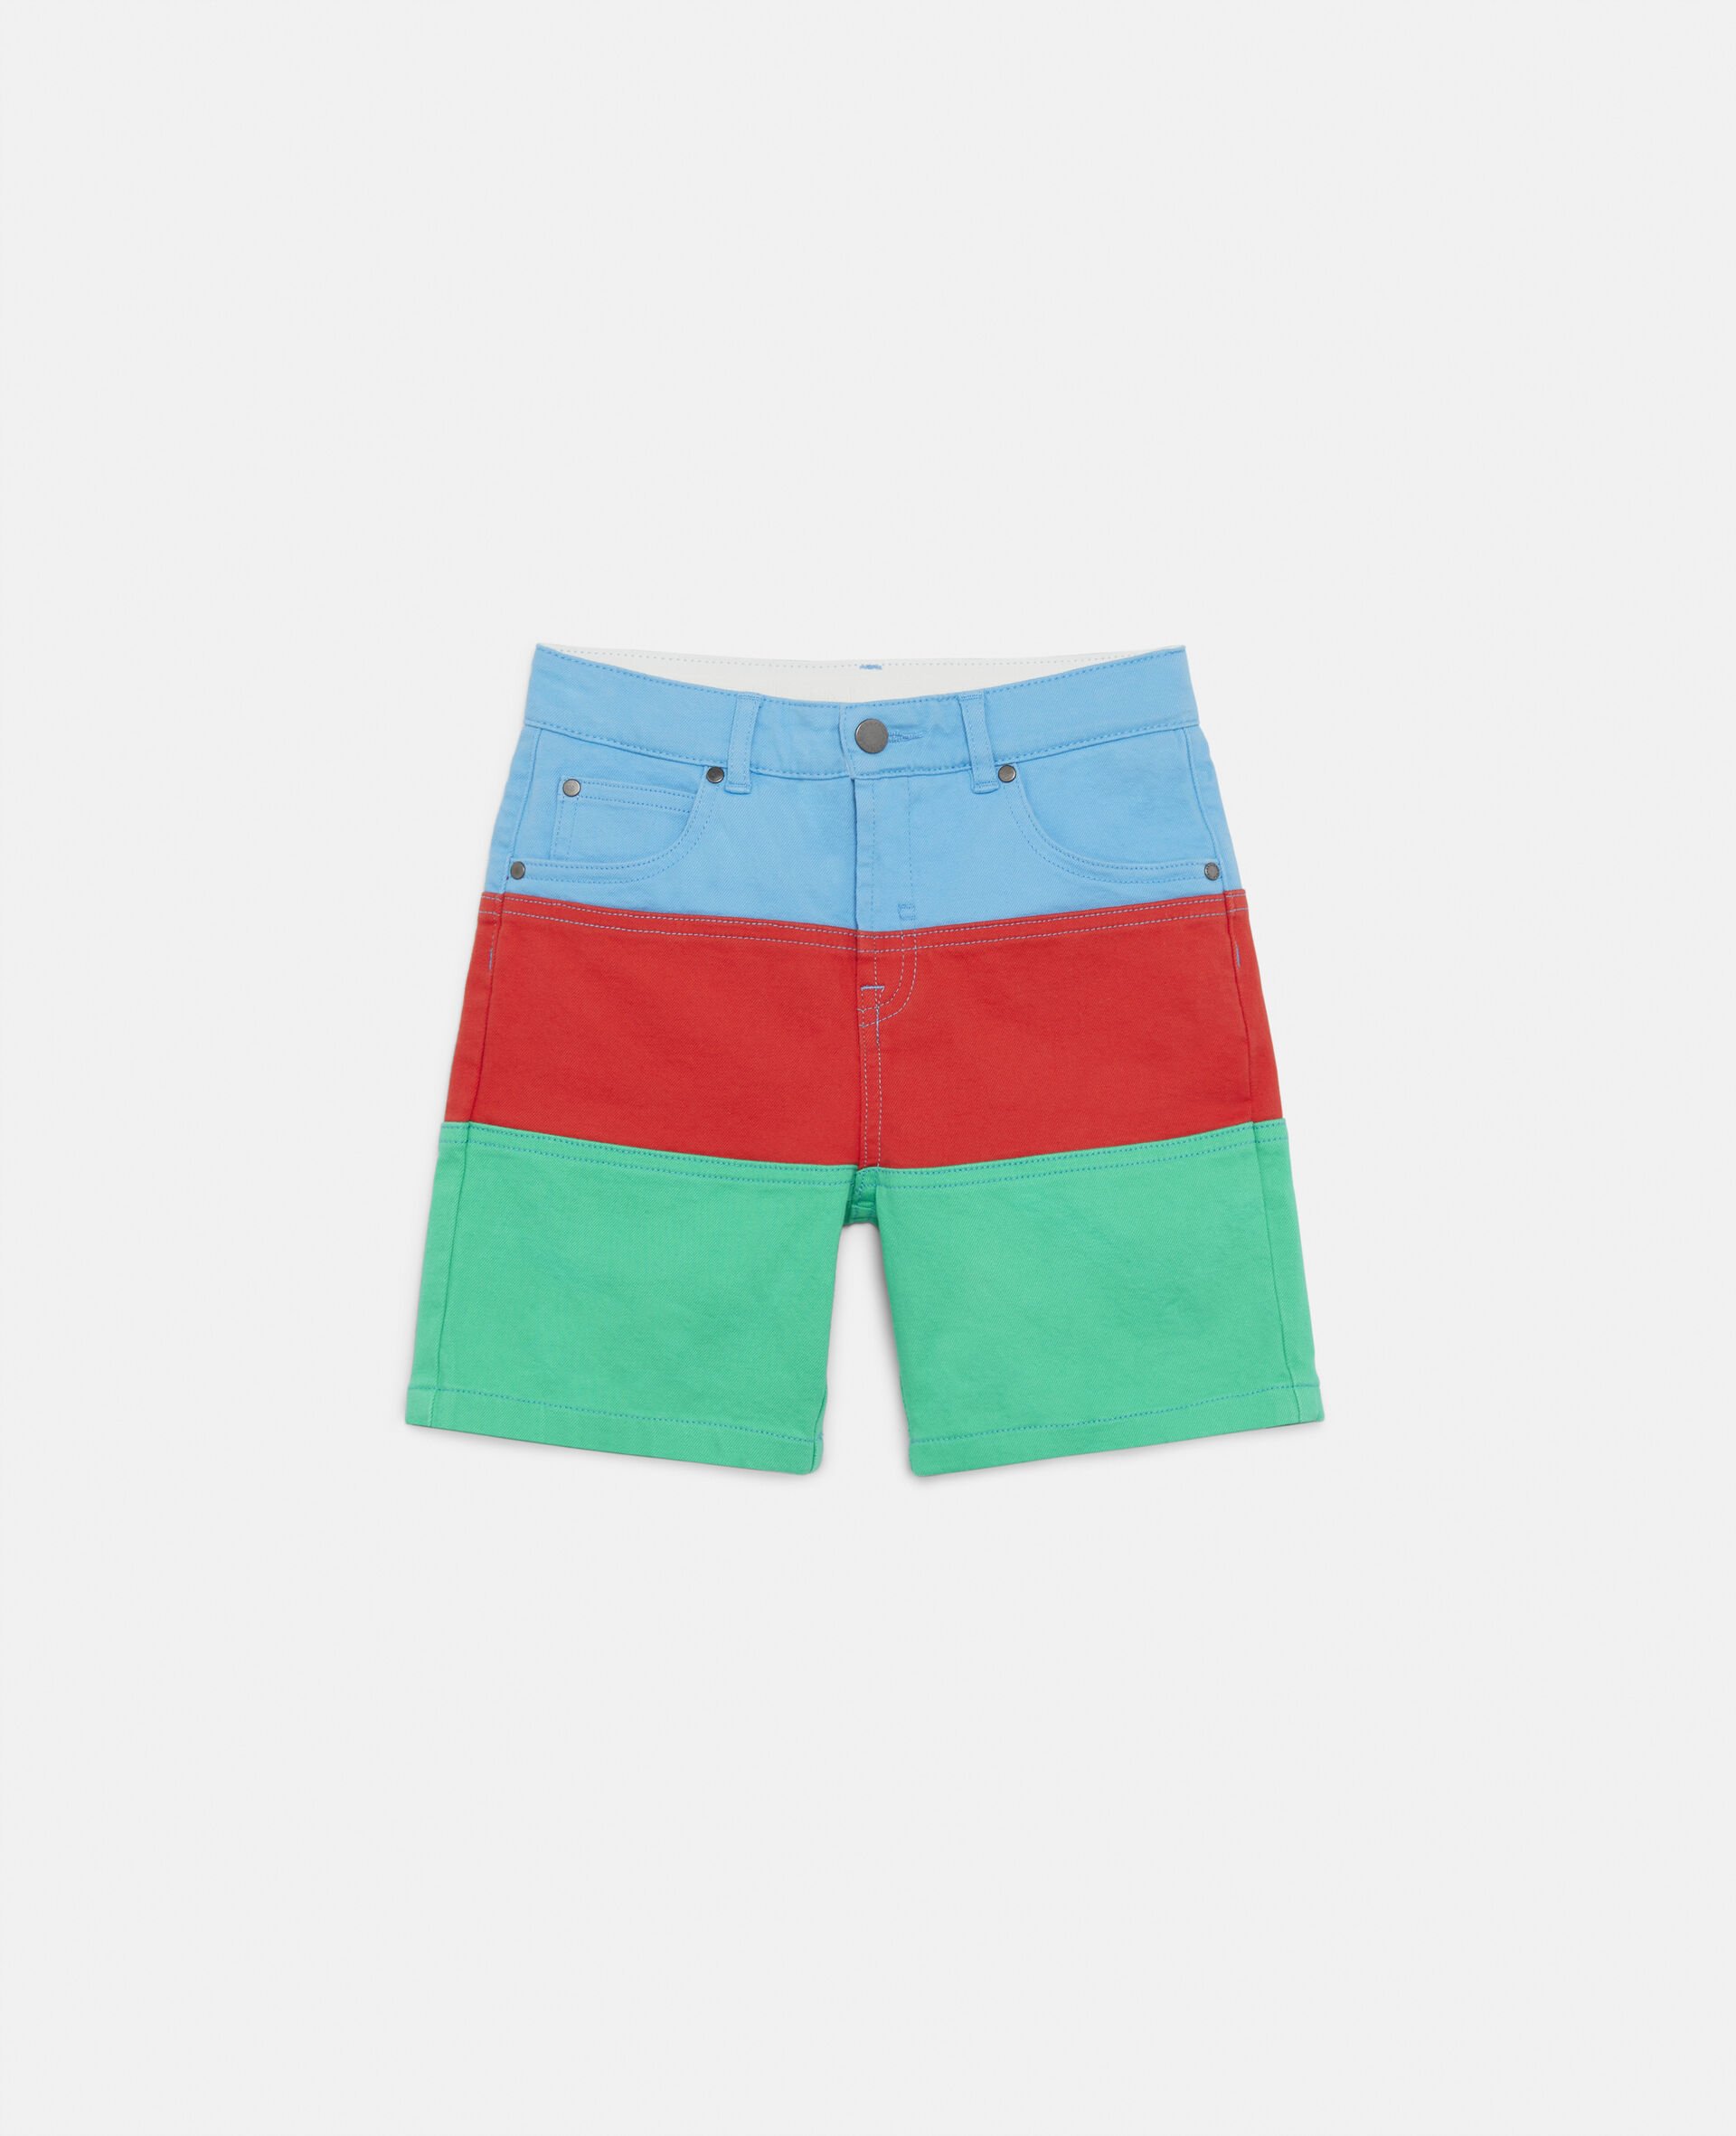 Colour Block Denim Shorts -Multicolour-large